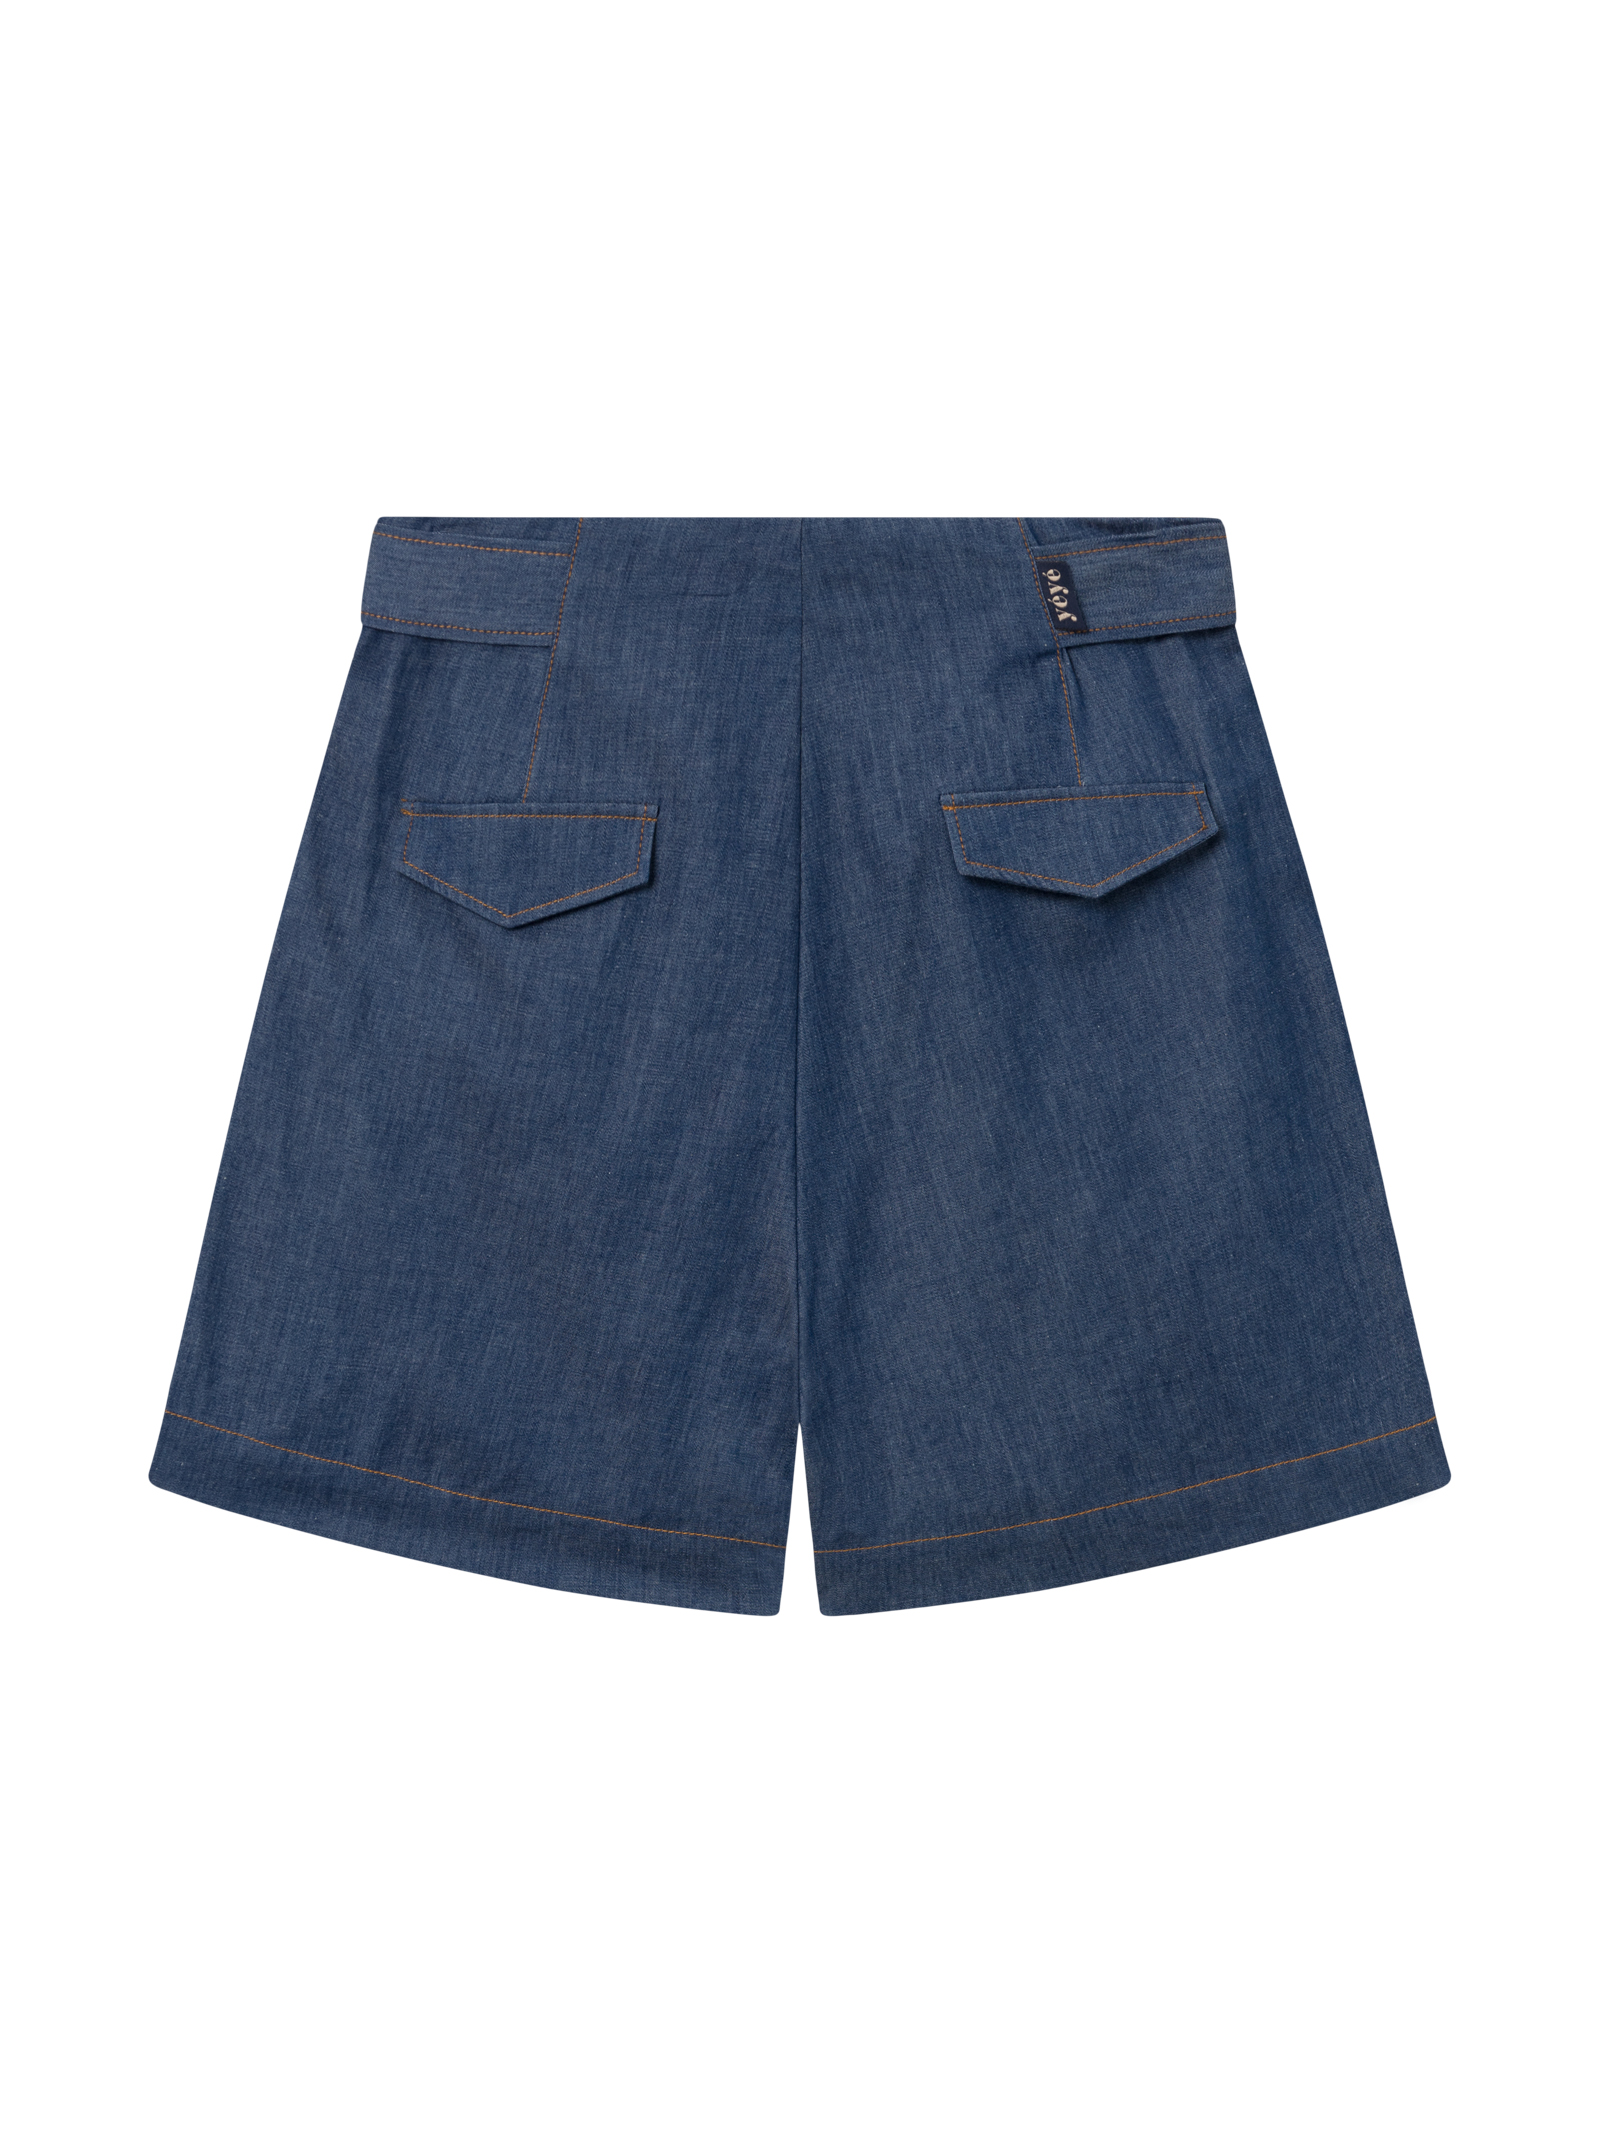 seaside shorts blue